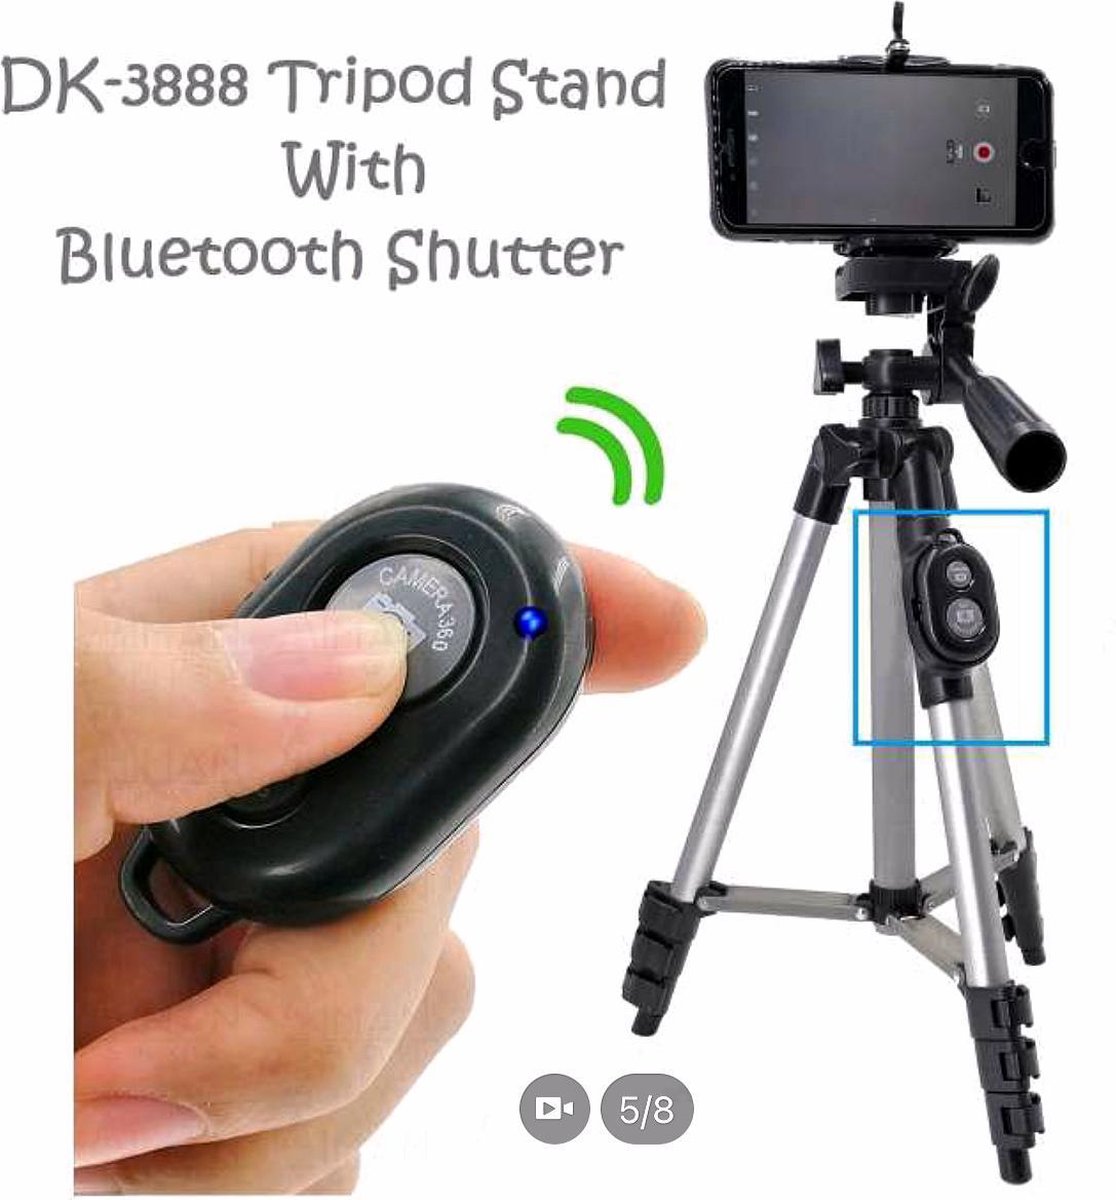 Smartphone Tripod Camera Statief 108 Cm Zilver Voor Fotocamera en Smartphone - iPhone - Canon – Nikon - Spiegelreflexcamera Inclusief Bluetooth Remote Shutter en Waterpas, HiCHiCO Model 3888